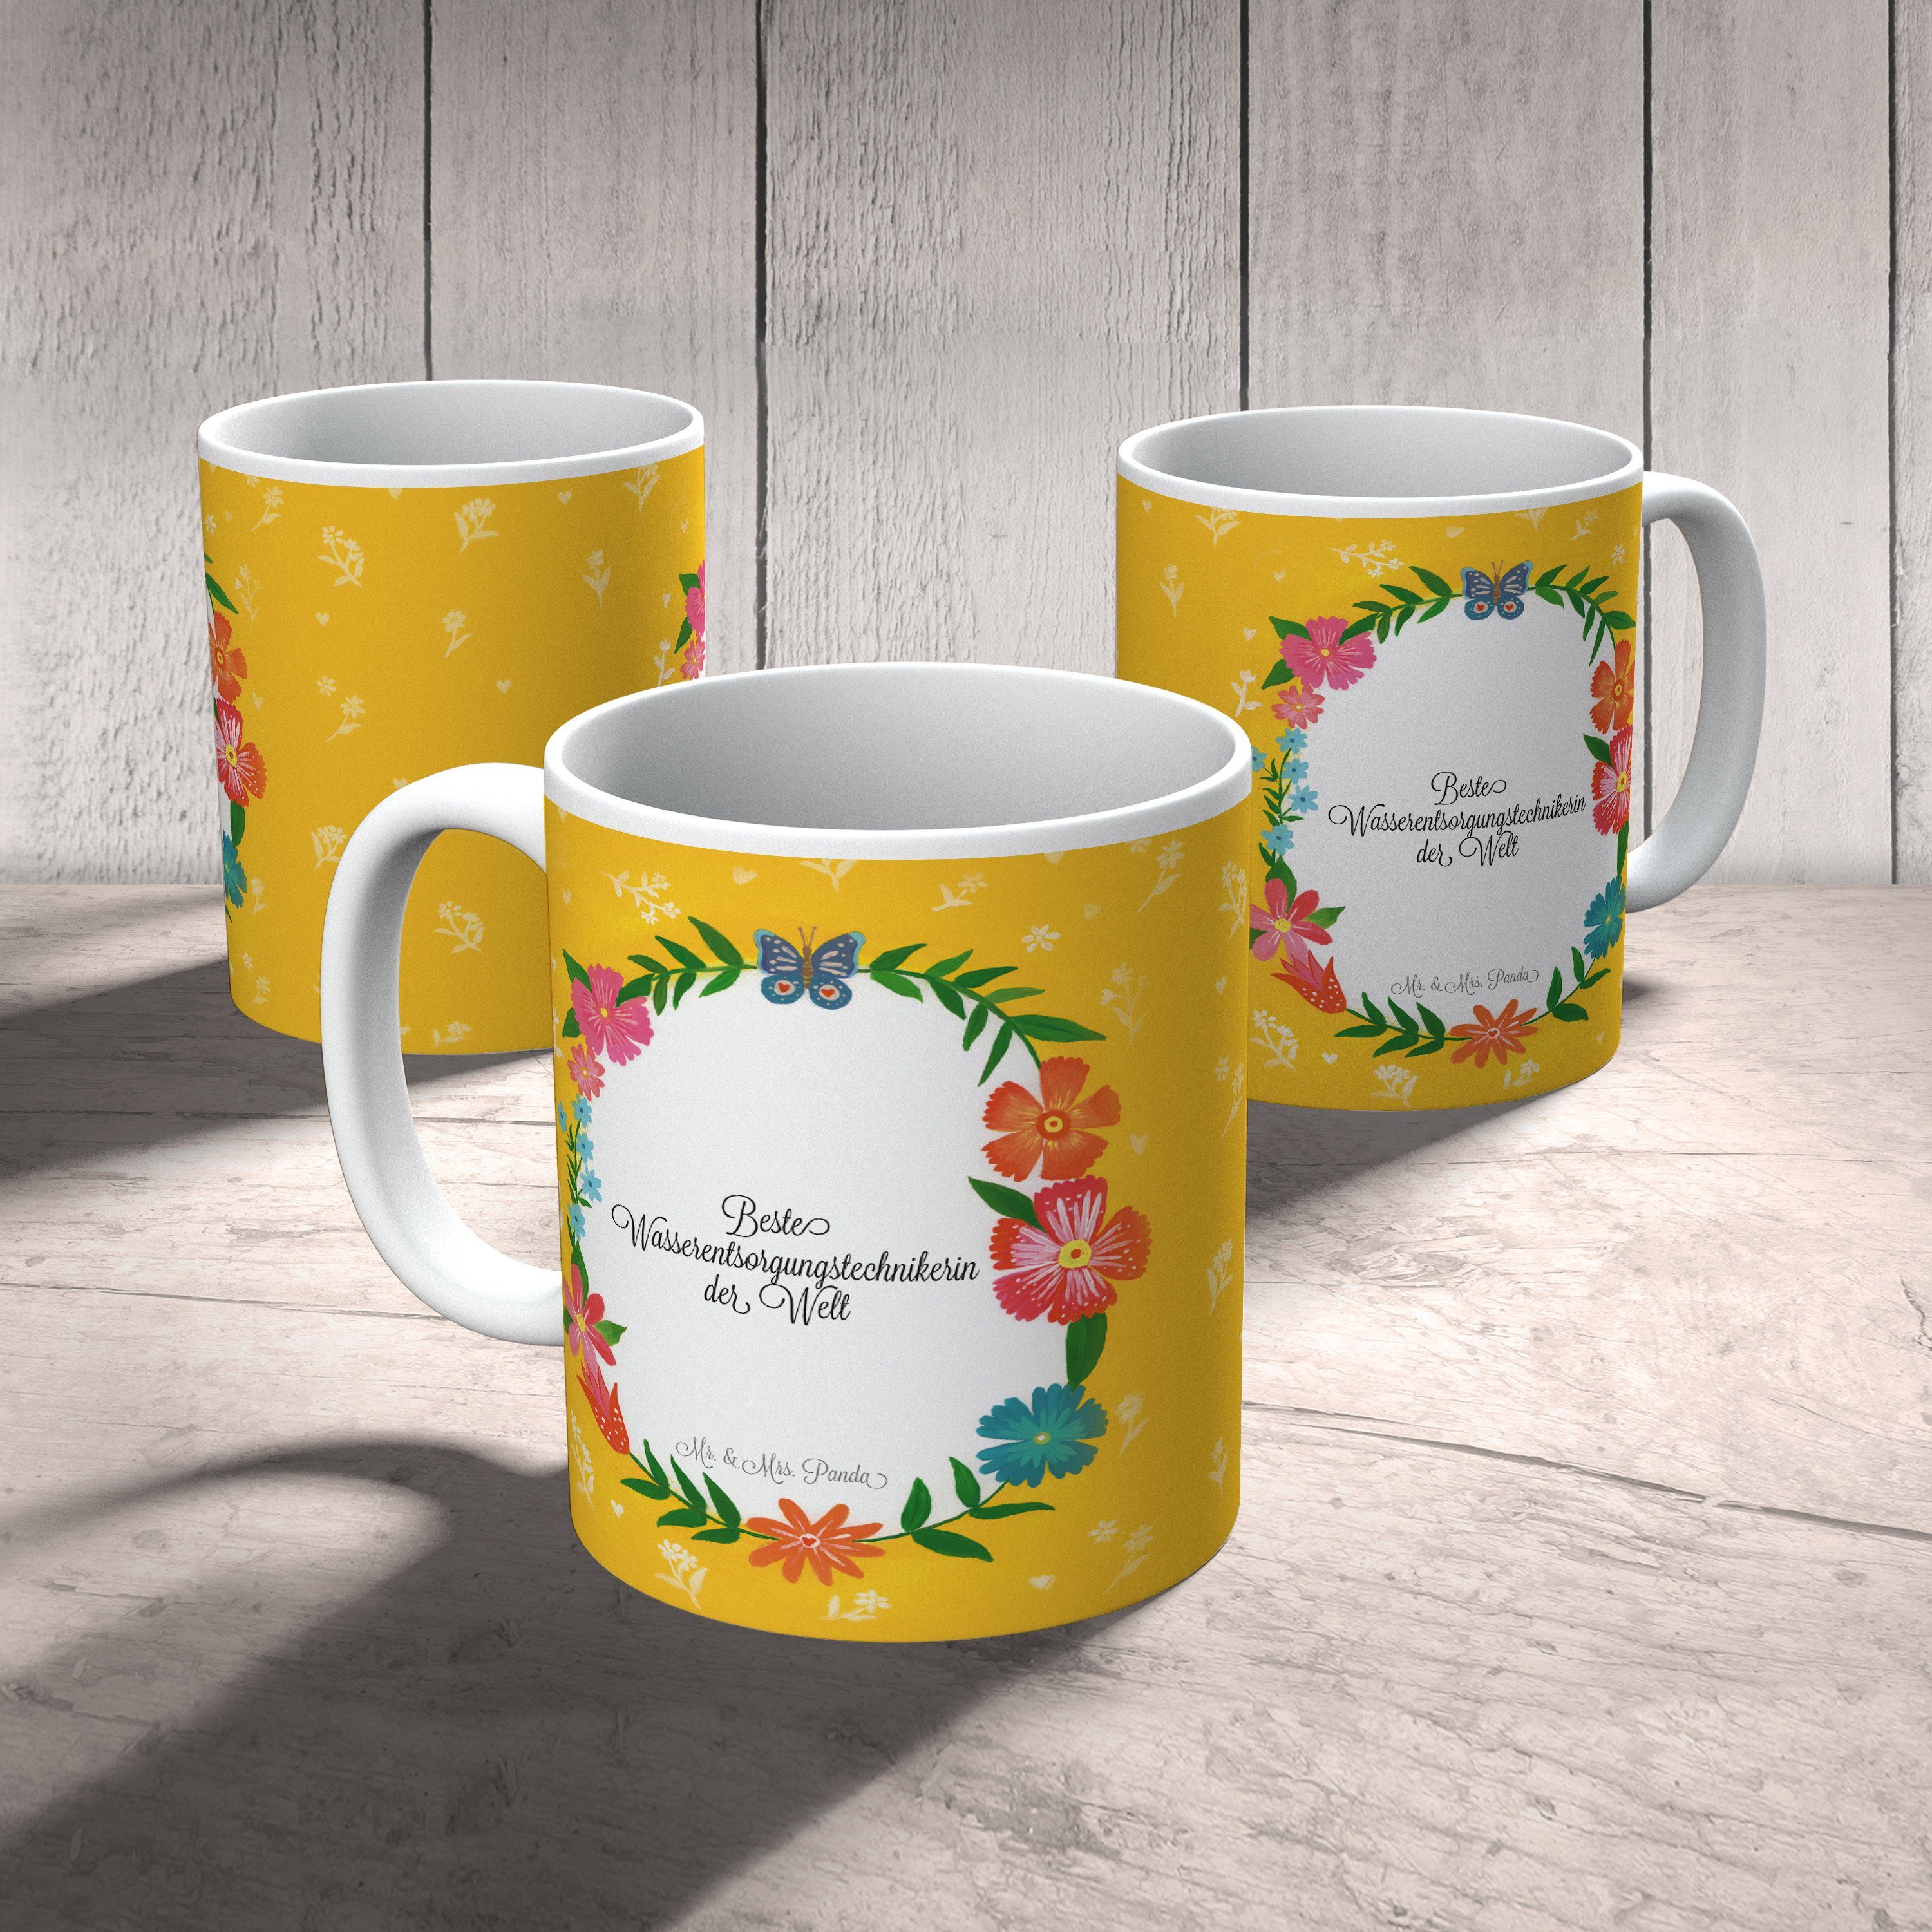 Mr. & Mrs. Gratulation, Wasserentsorgungstechnikerin Au, Geschenk, Tasse Keramik - Kaffeetasse, Panda